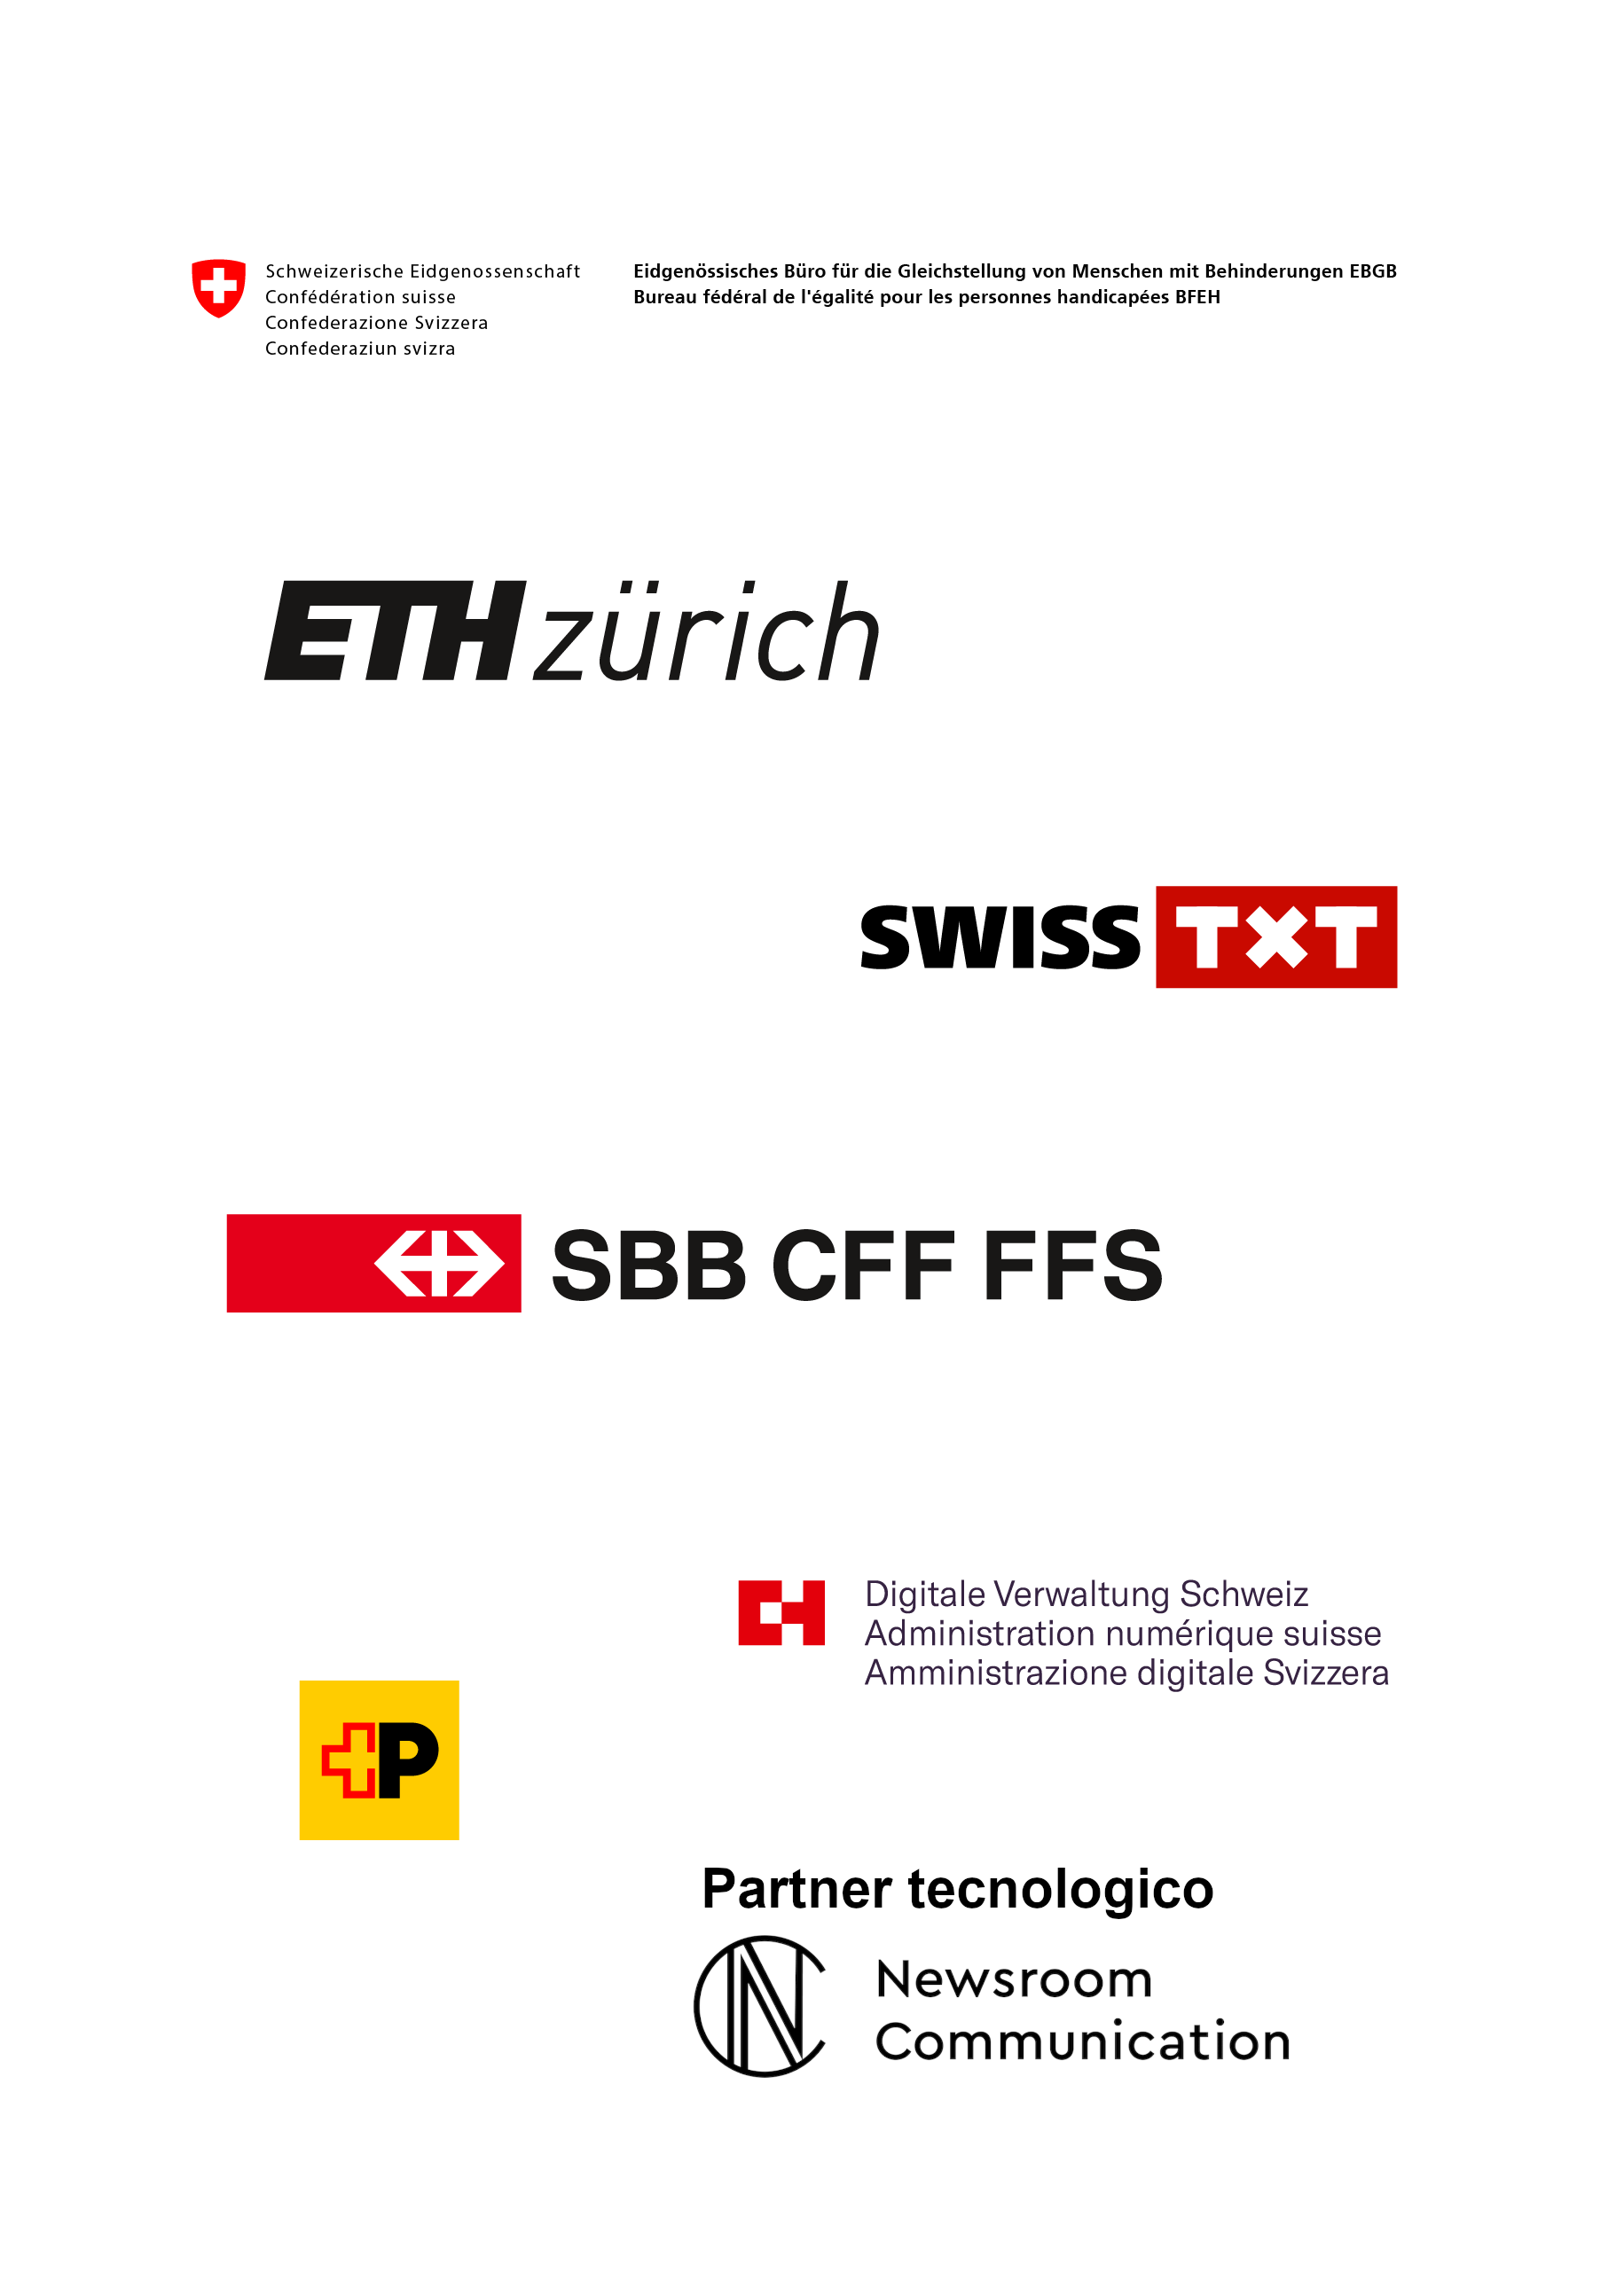 Organizzazione: UFPD, Politecnico federale di Zurigo, SWISS TXT SA, Post CH SA, FFS, Amministrazione digitale Svizzera